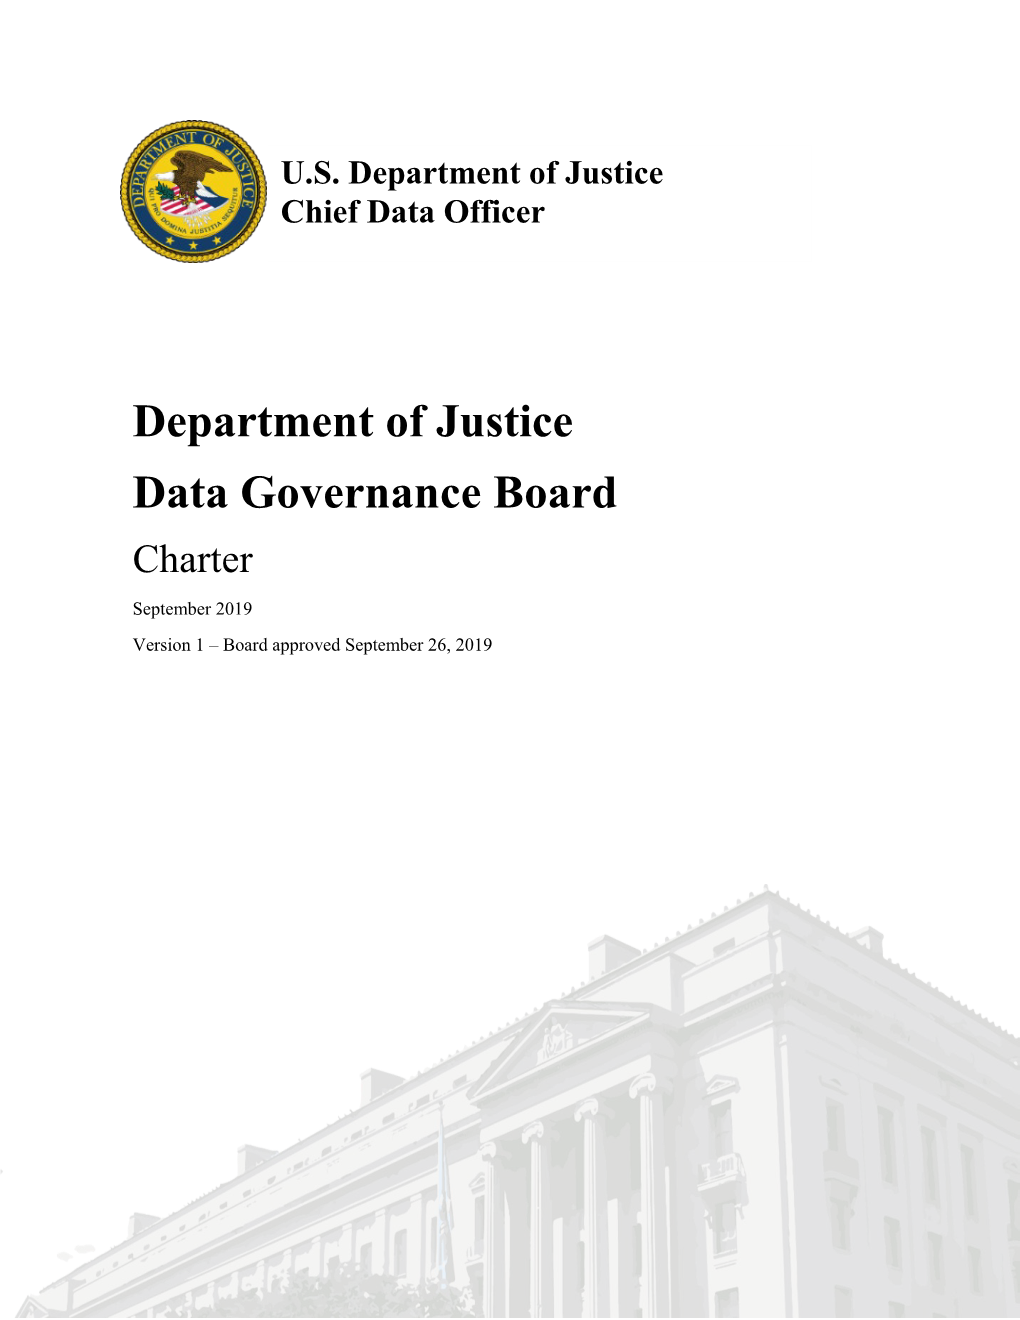 Data Governance Board Charter September 2019 Version 1 – Board Approved September 26, 2019